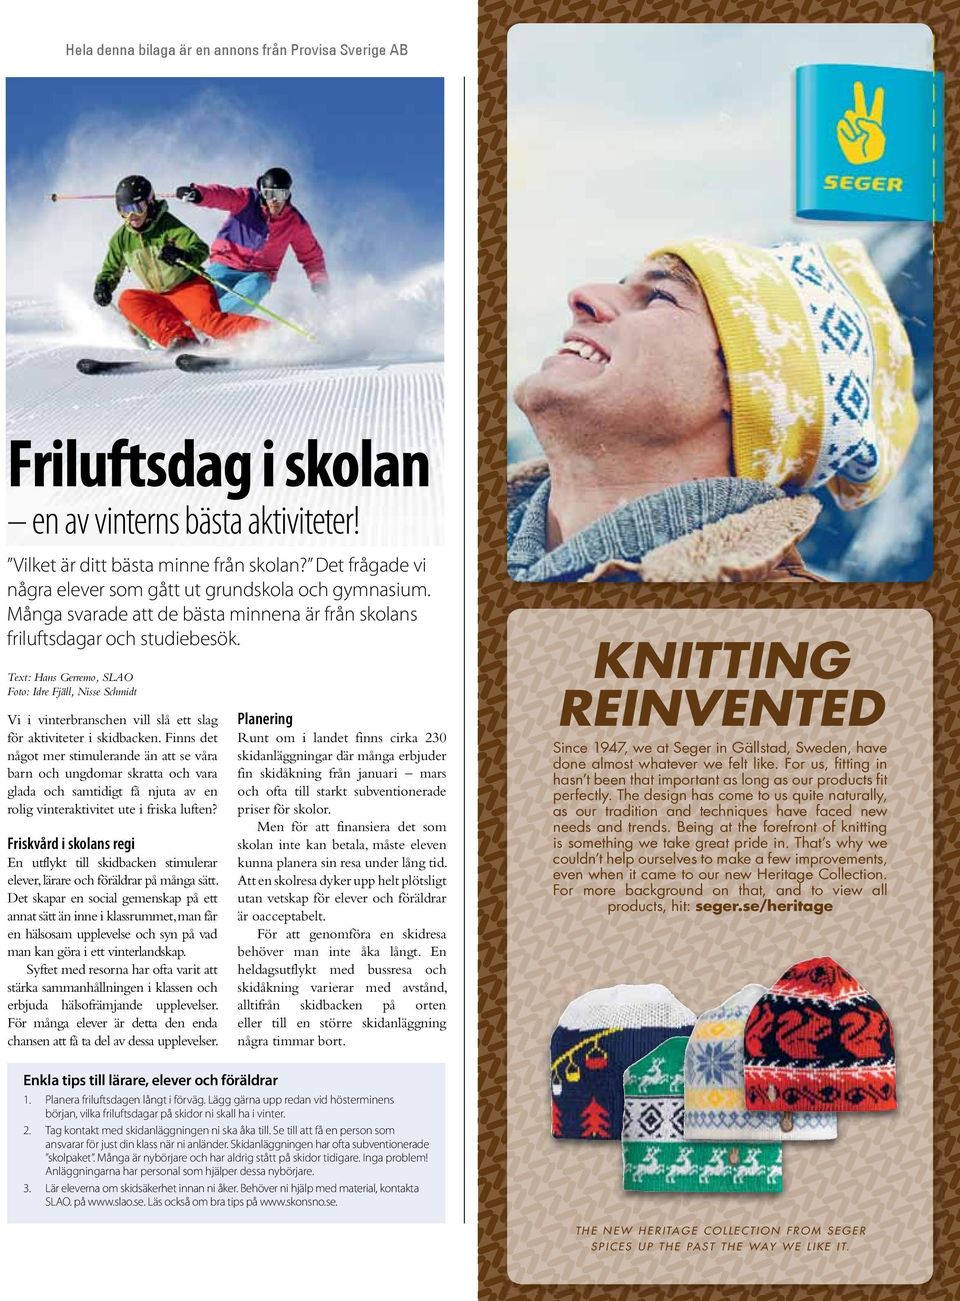 Text: Hans Gerremo, SLAO Foto: Idre Fjäll, Nisse Schmidt Vi i vinterbranschen vill slå ett slag för aktiviteter i skidbacken.